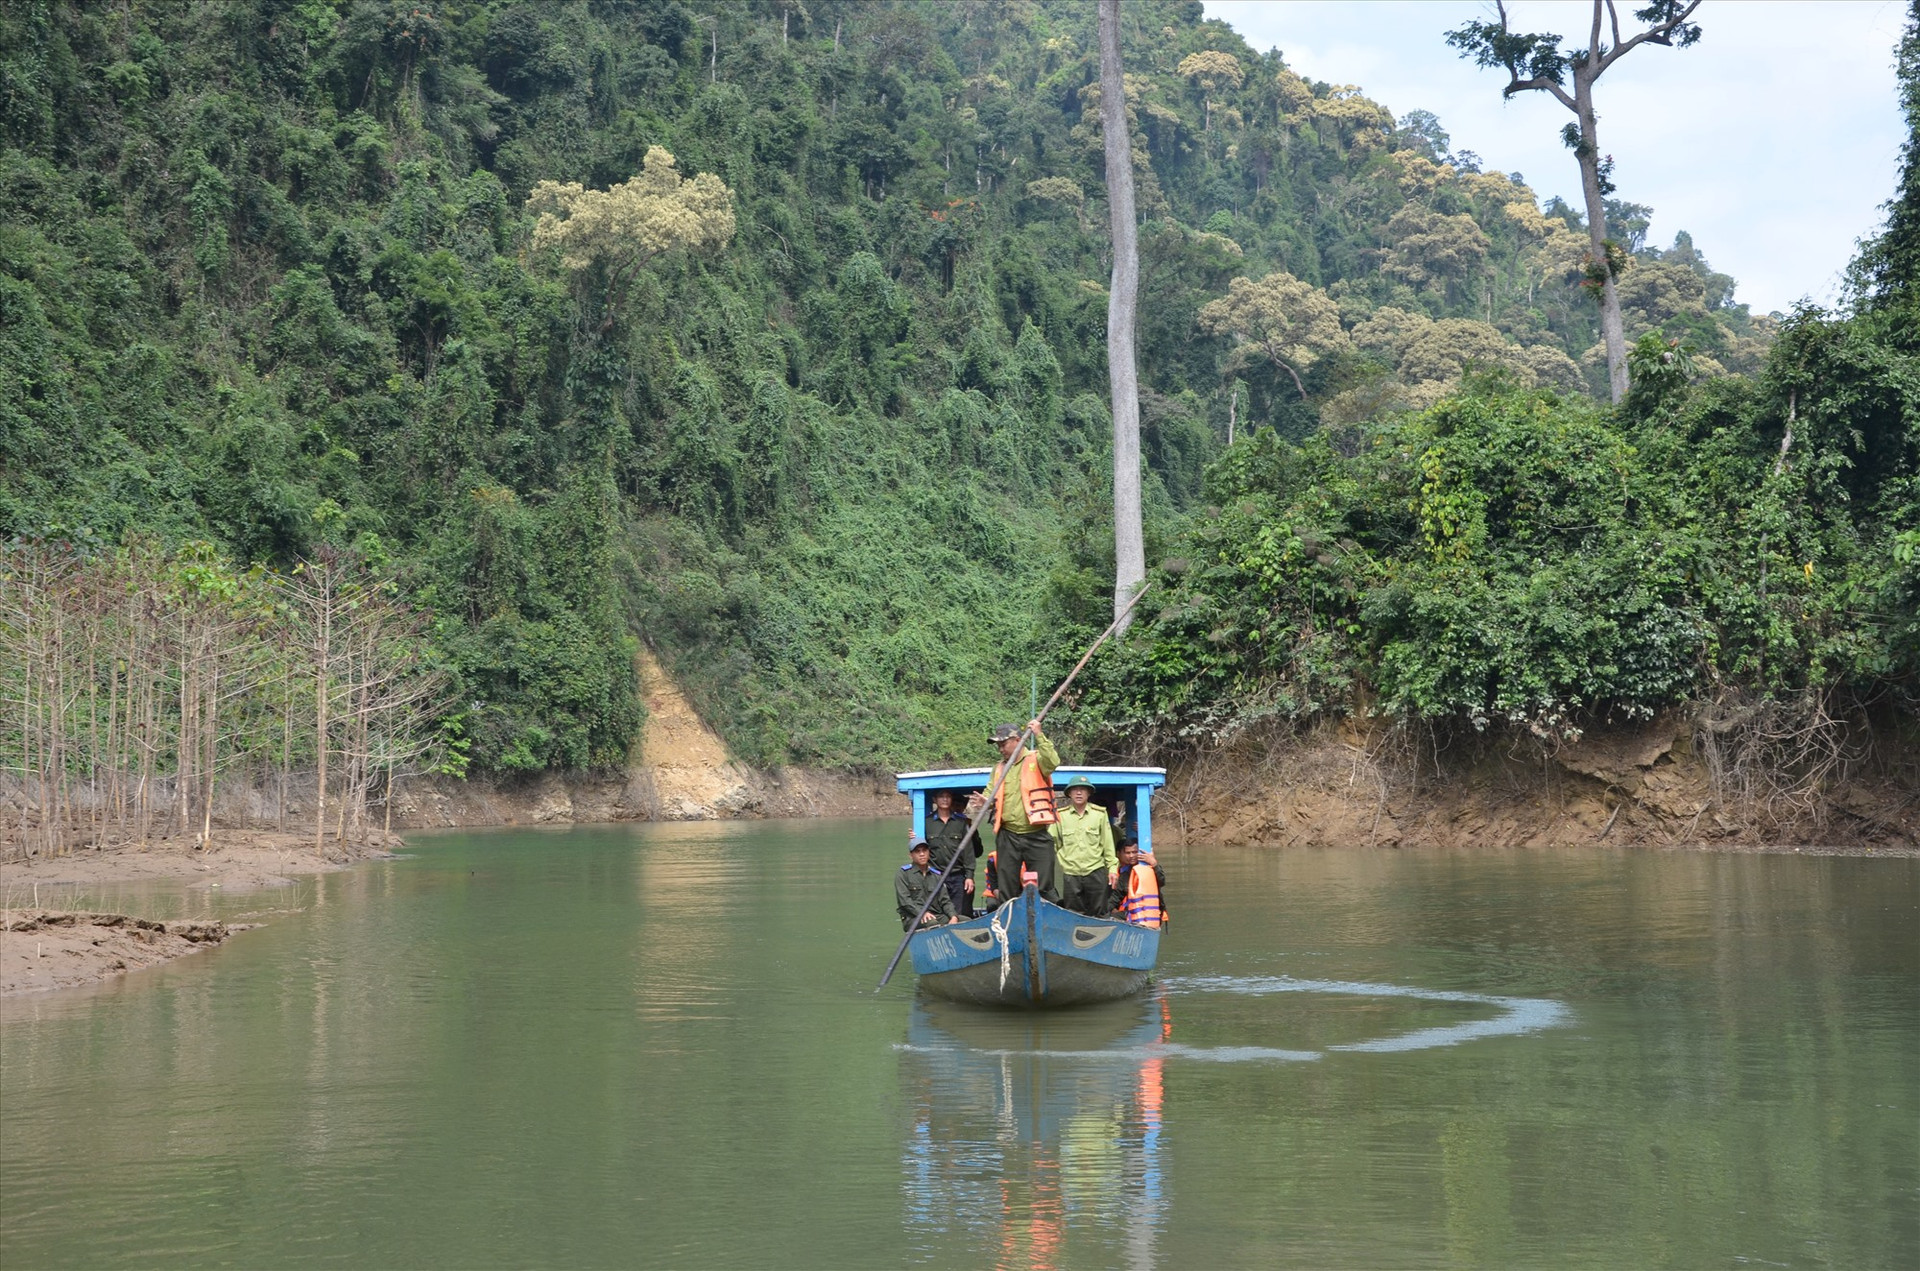 Lực lượng bảo vệ rừng chuyên trách Vườn quốc gia Sông Thanh tuần tra trong lưu vực lòng hồ thủy điện Đắc Mi, thuộc huyện Phước Sơn